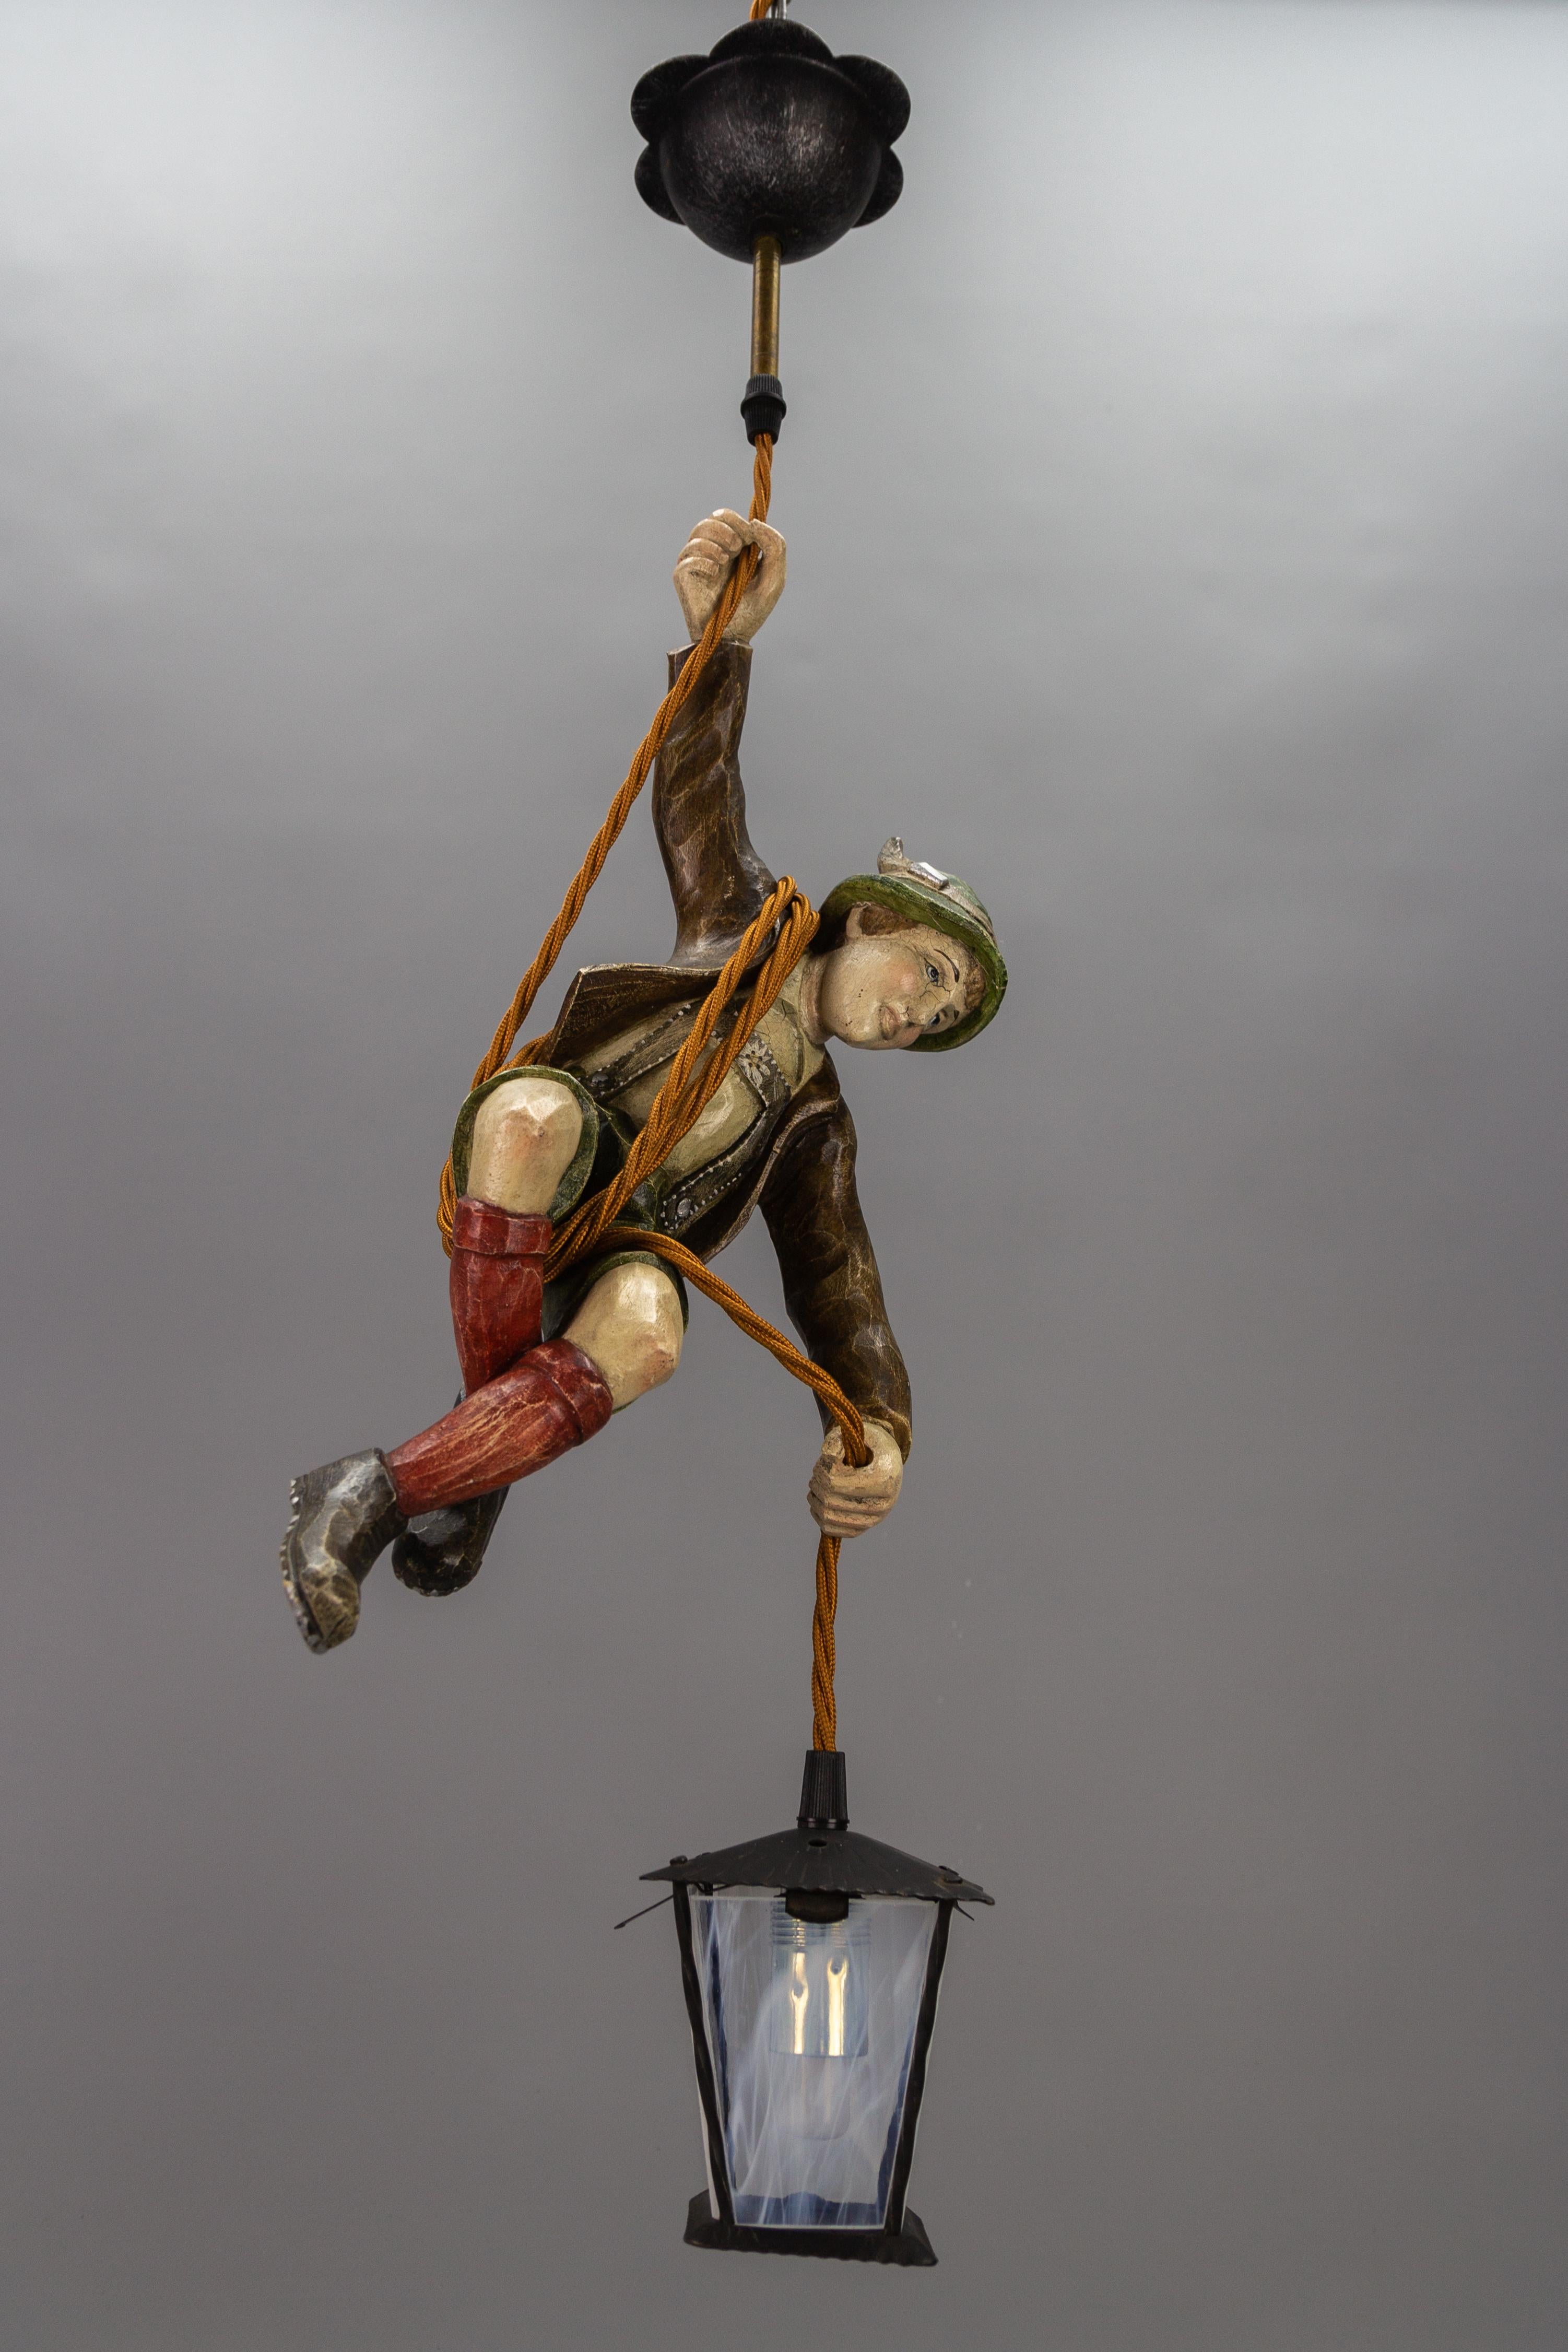 Cette magnifique lampe suspendue allemande ou Lüstermännchen représente un alpiniste sculpté à la main et portant de magnifiques vêtements traditionnels bavarois peints à la main dans des couleurs marron, vert, blanc et rouge. L'alpiniste en bois